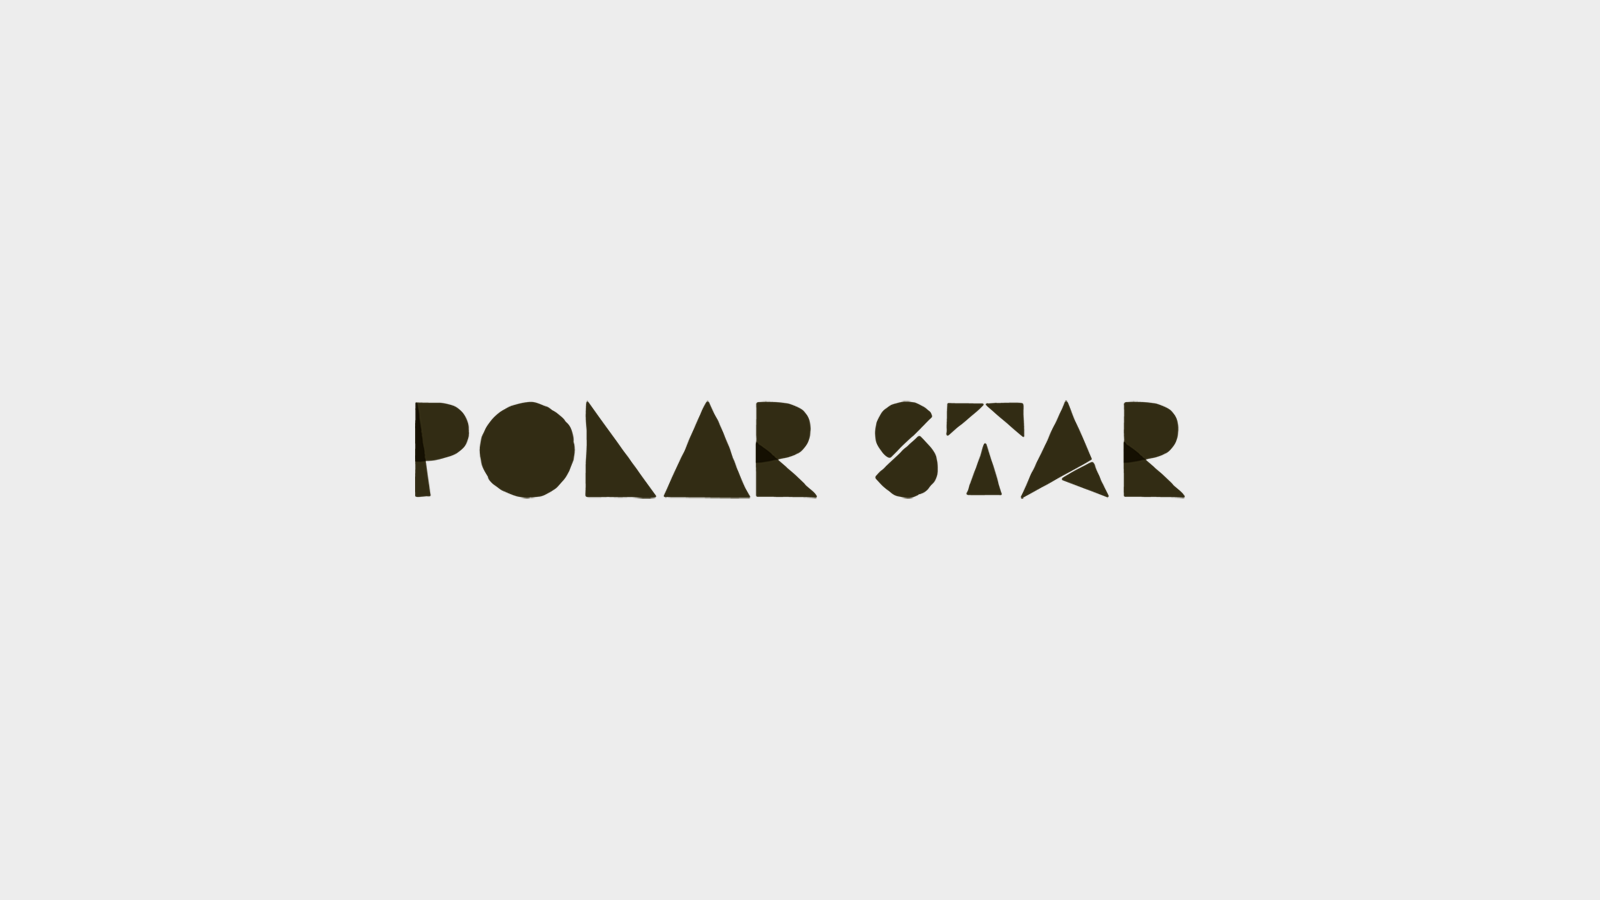 POLAR STAR